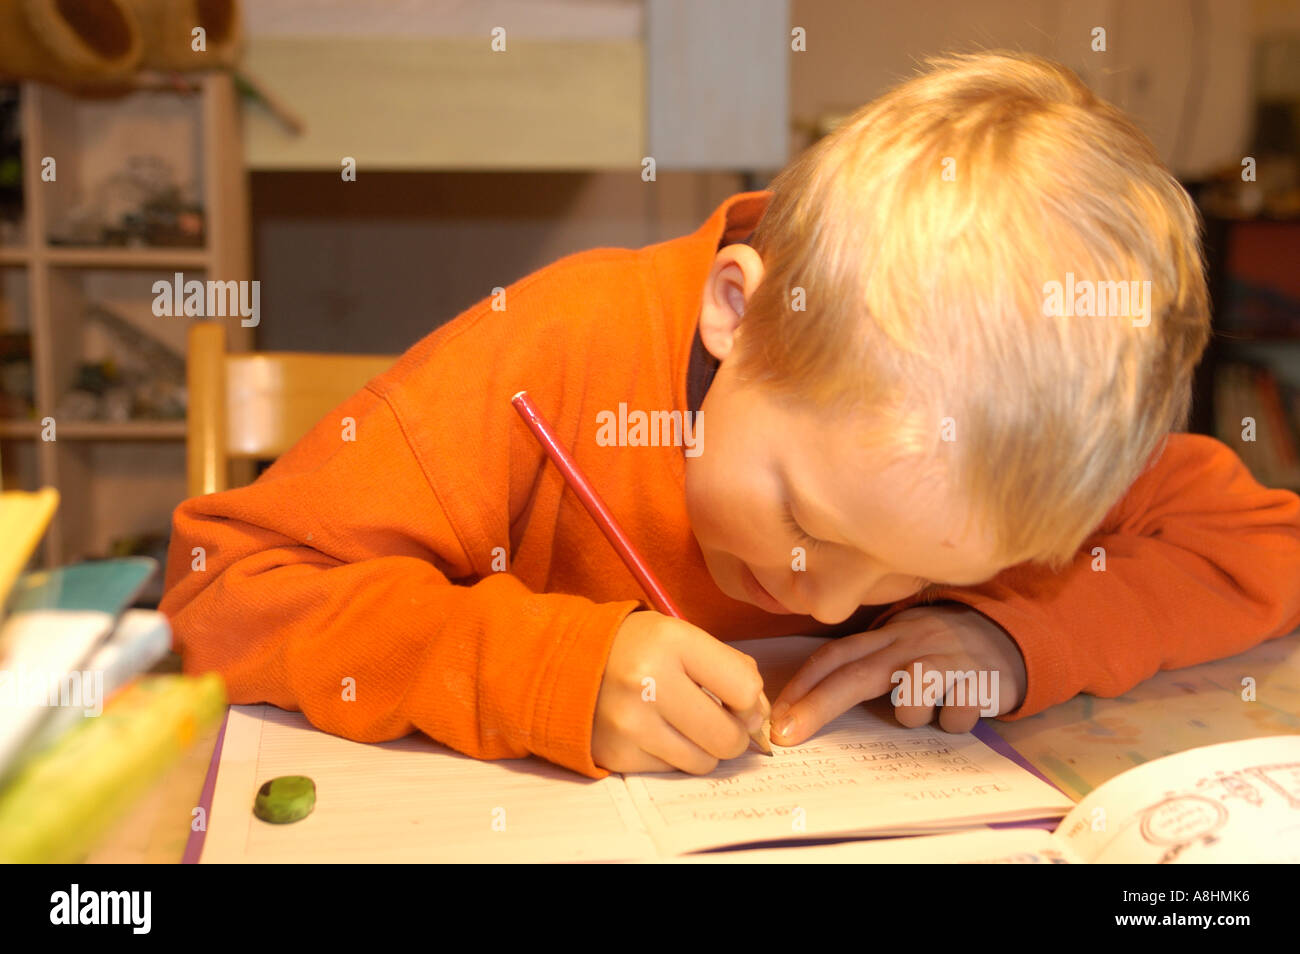 Los siete años de edad está haciendo sus deberes Foto de stock